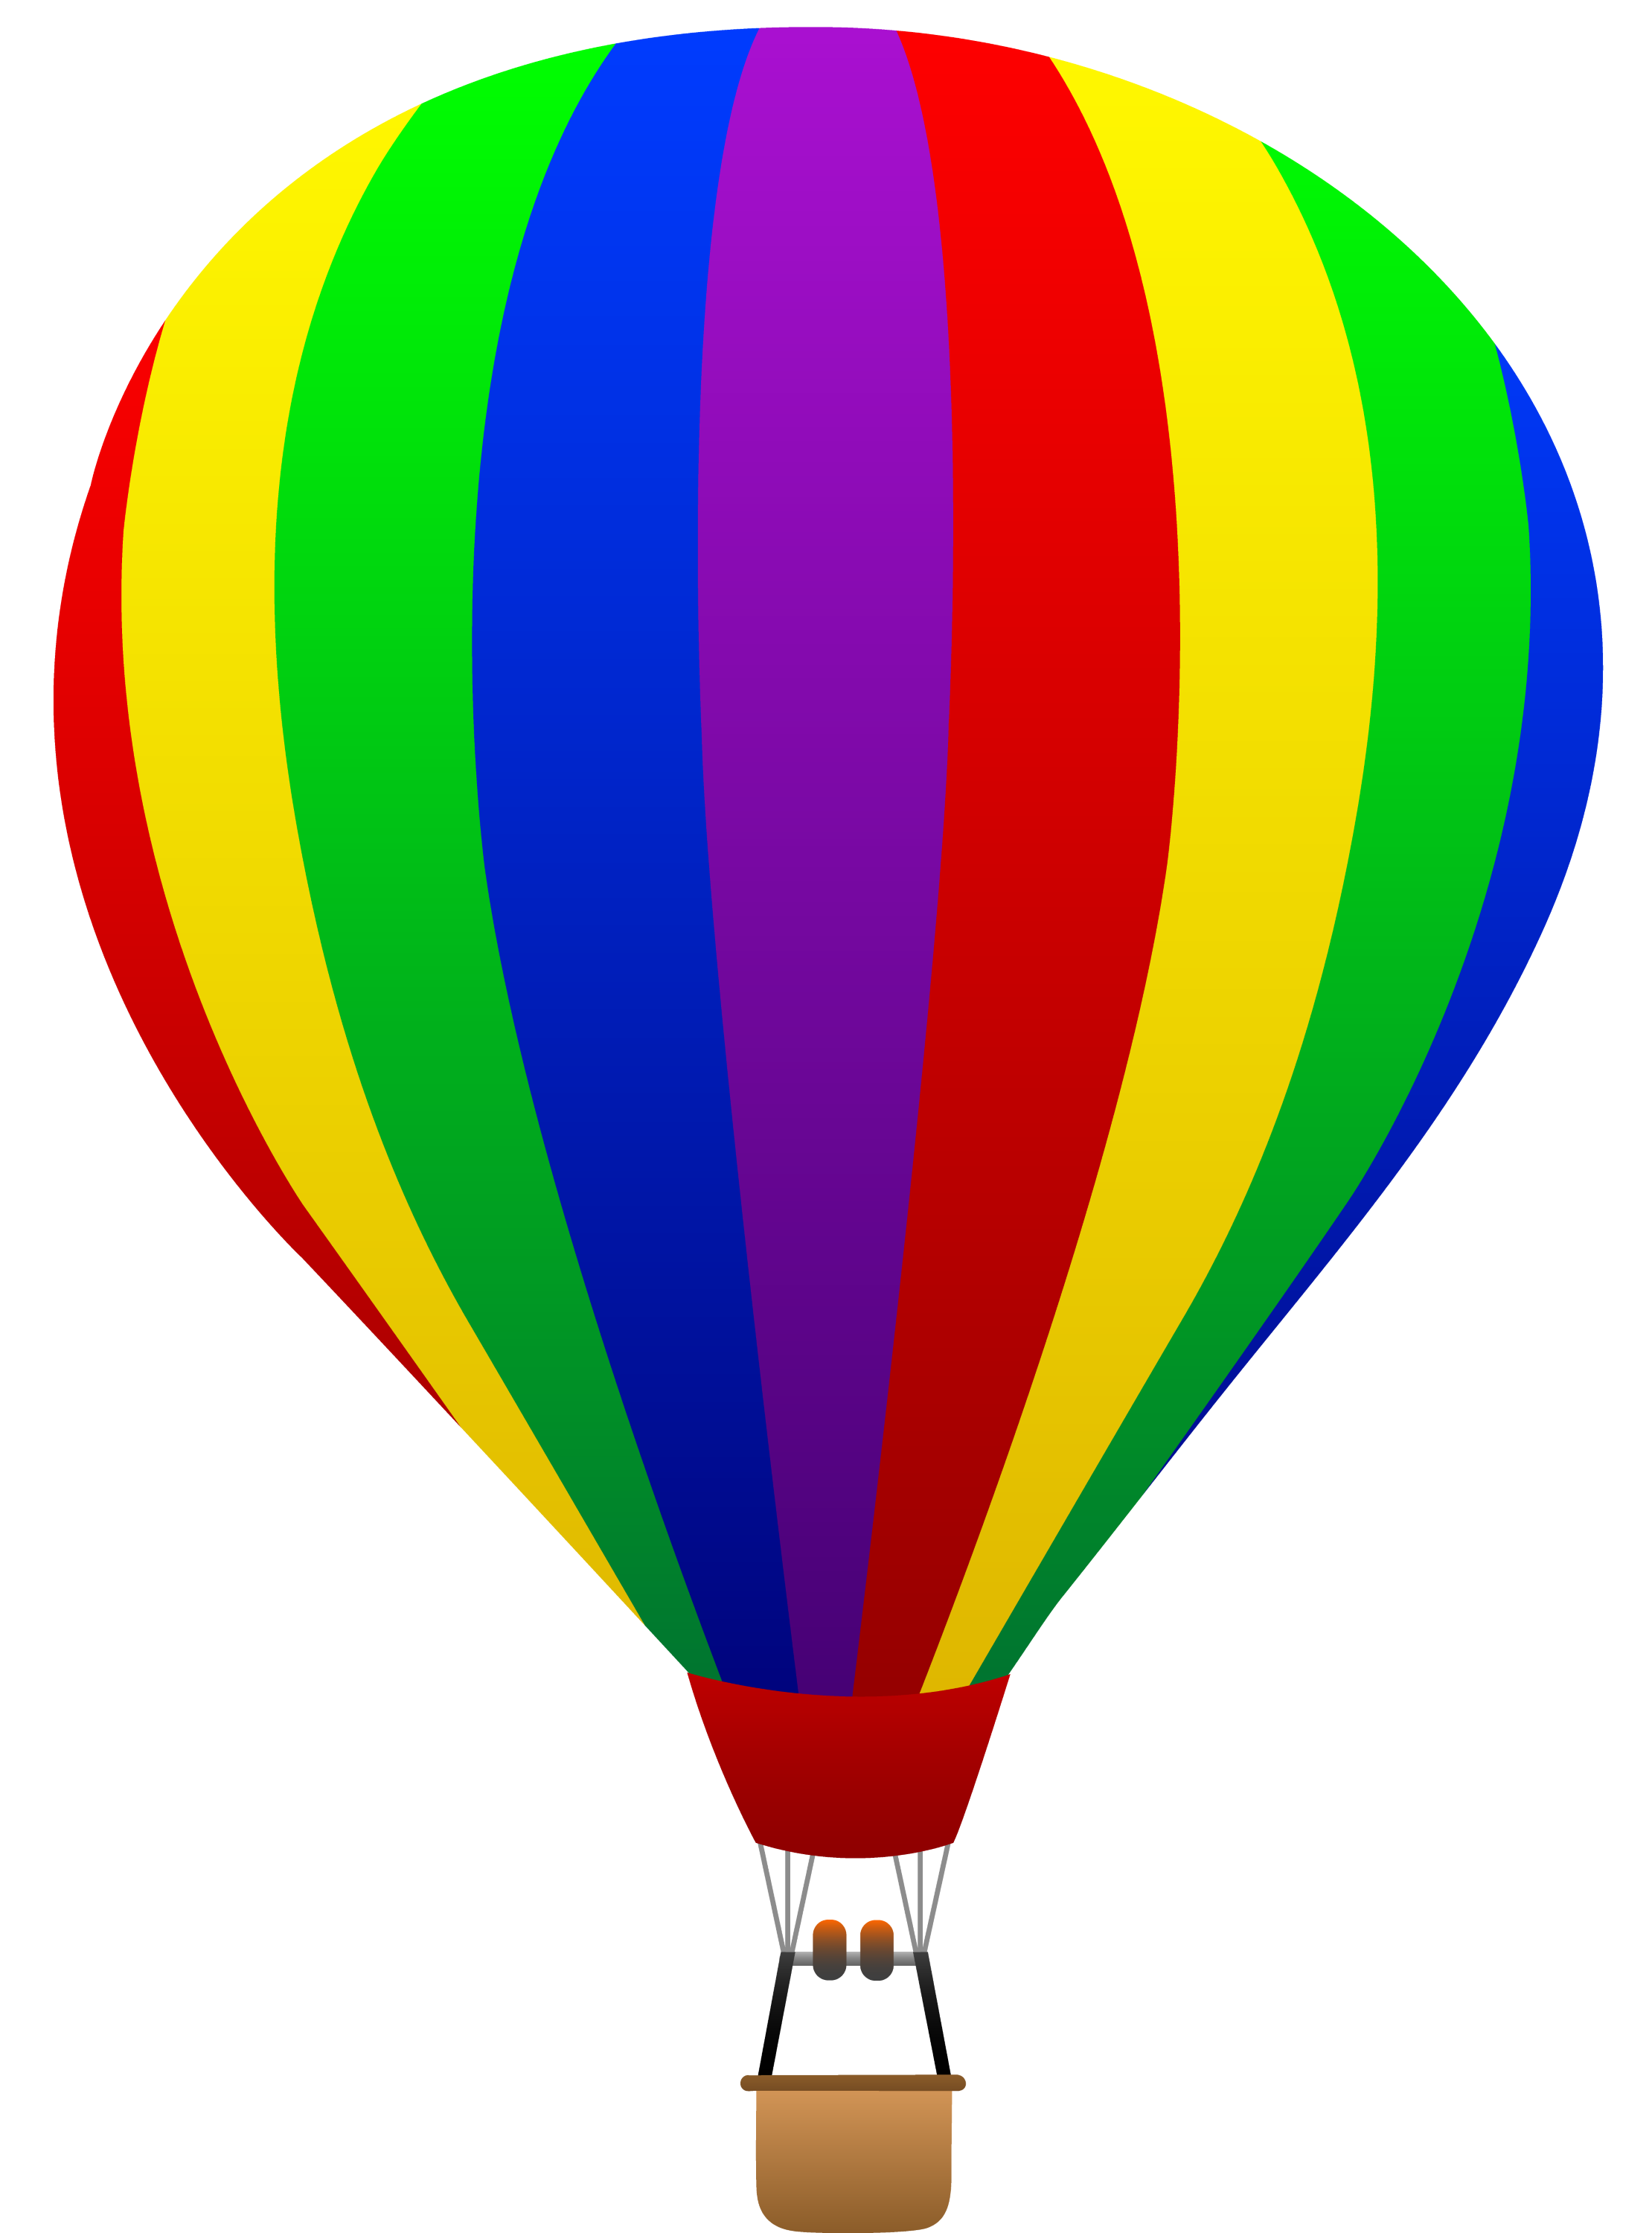 Rainbow Striped Hot Air Balloon - Free Clip Art